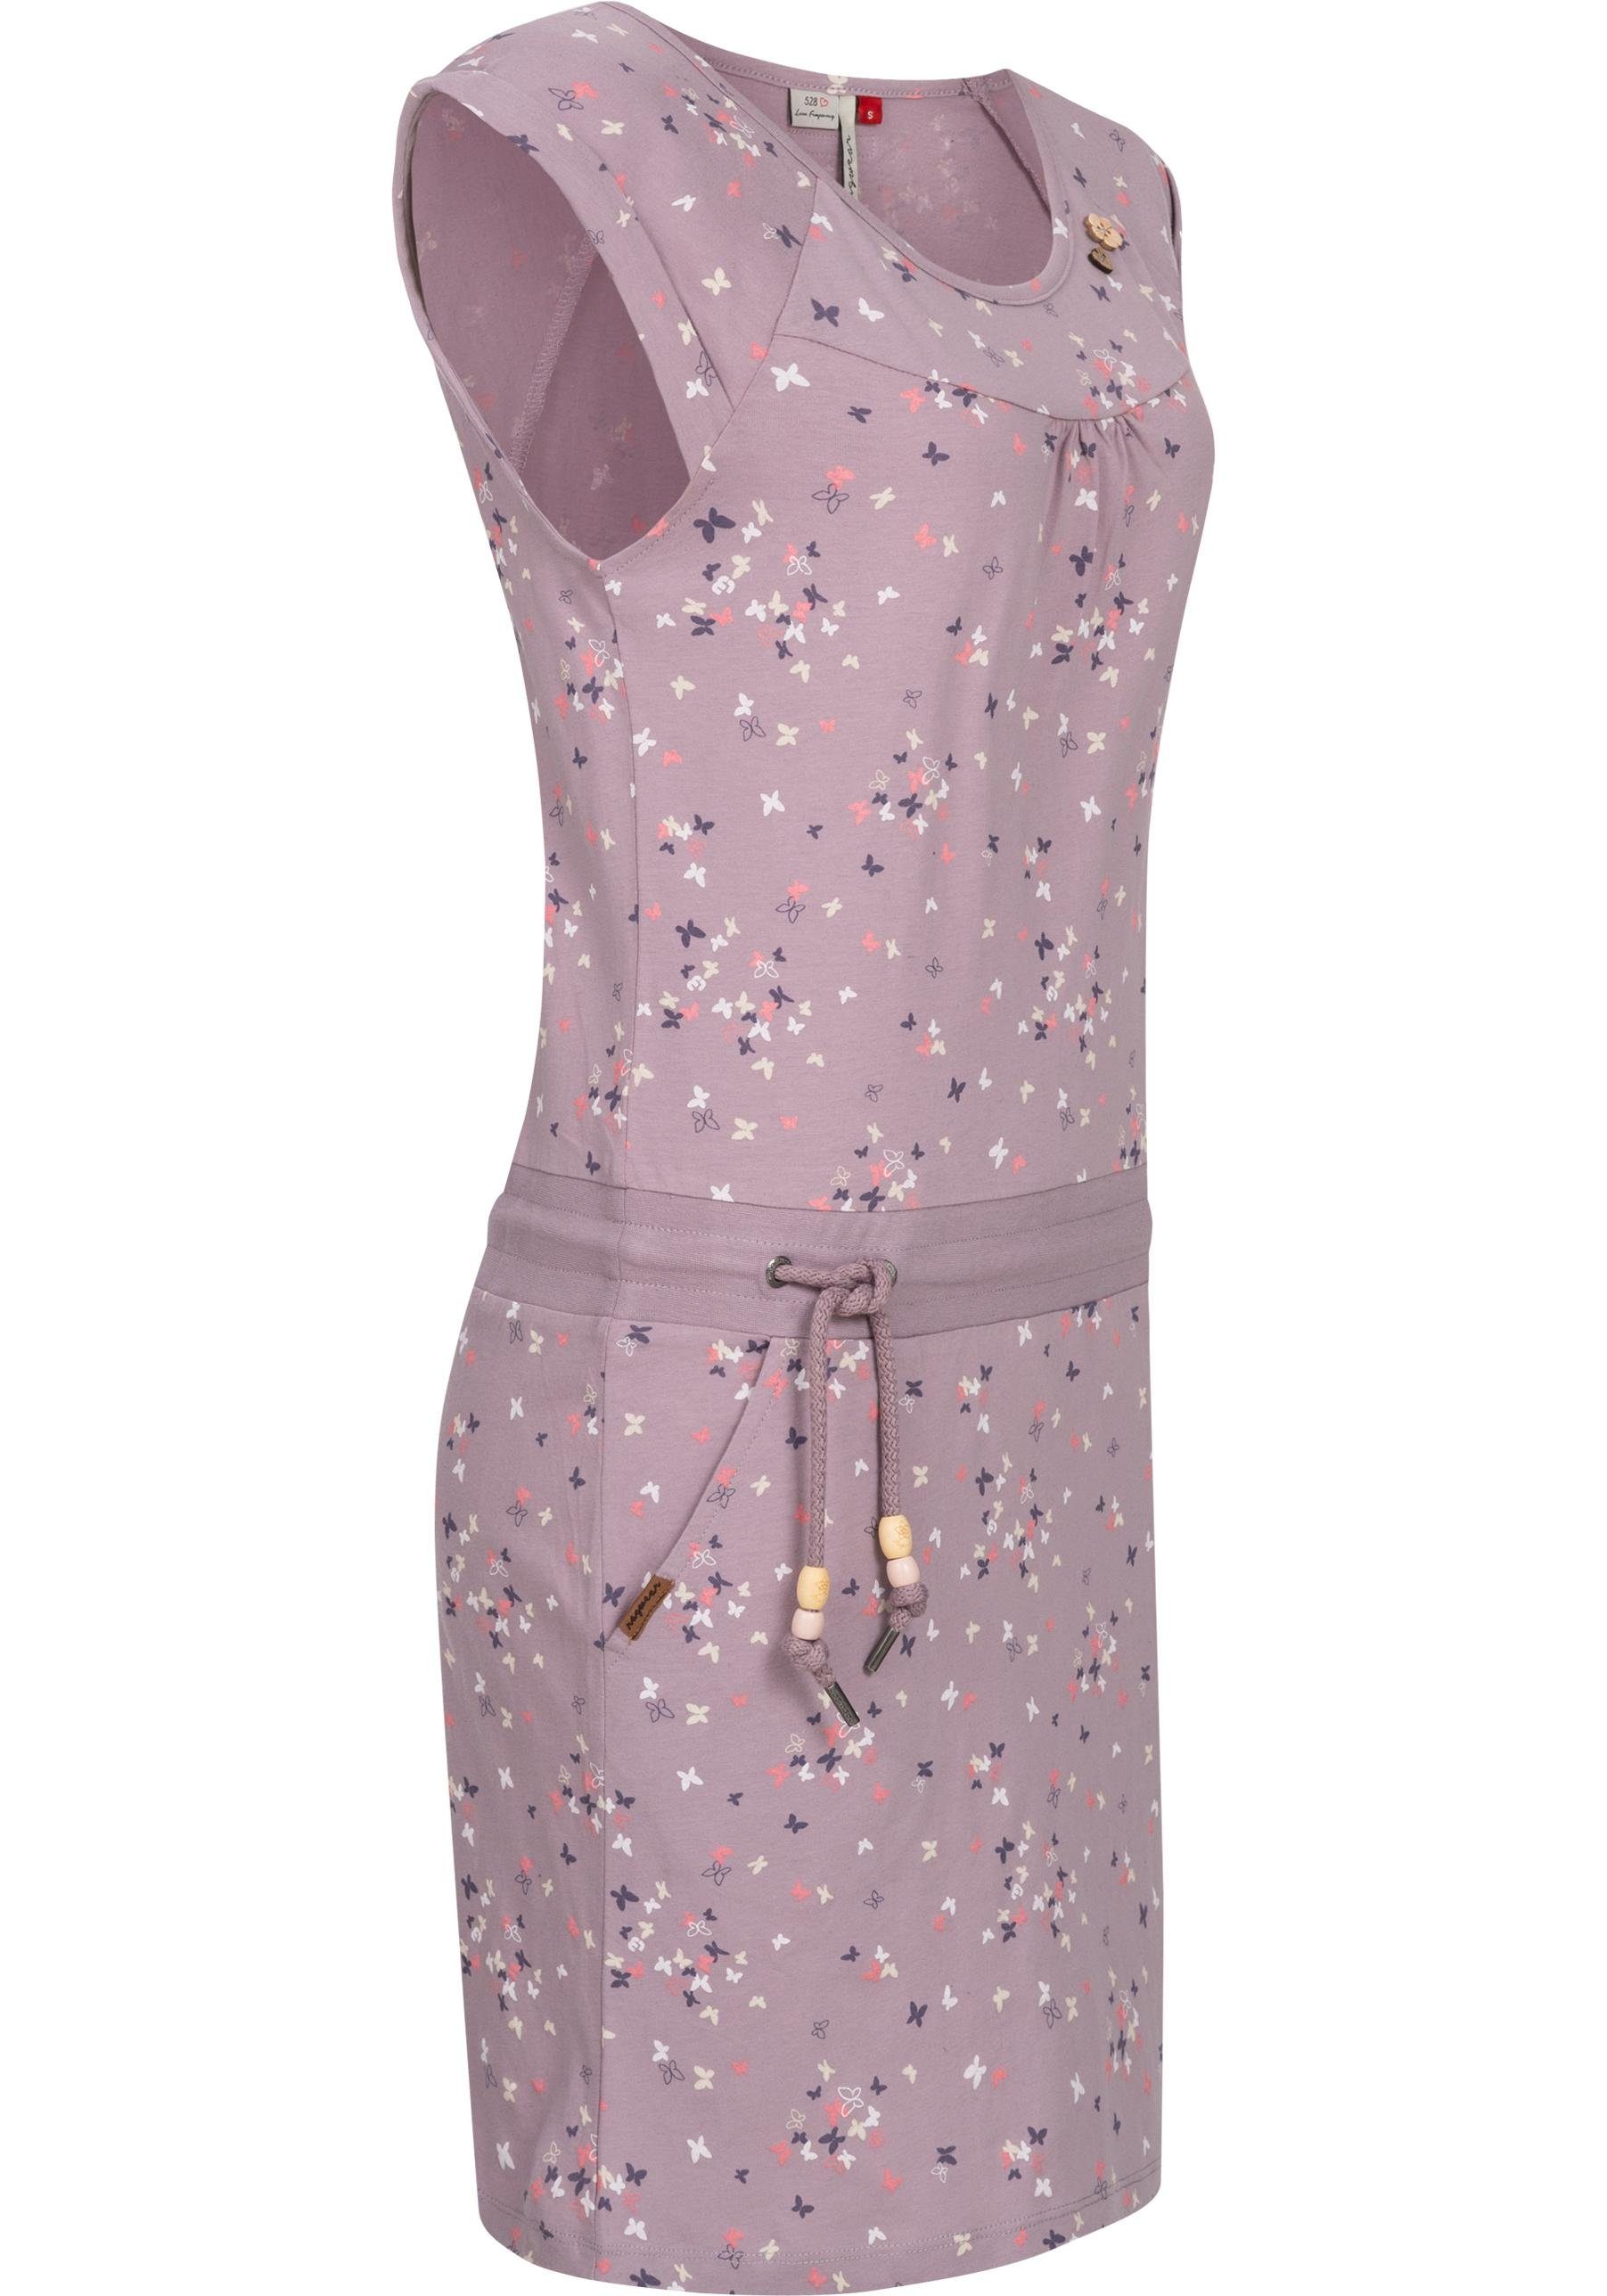 Ragwear Sommerkleid Penelope leichtes Print mit lavendel Kleid Baumwoll